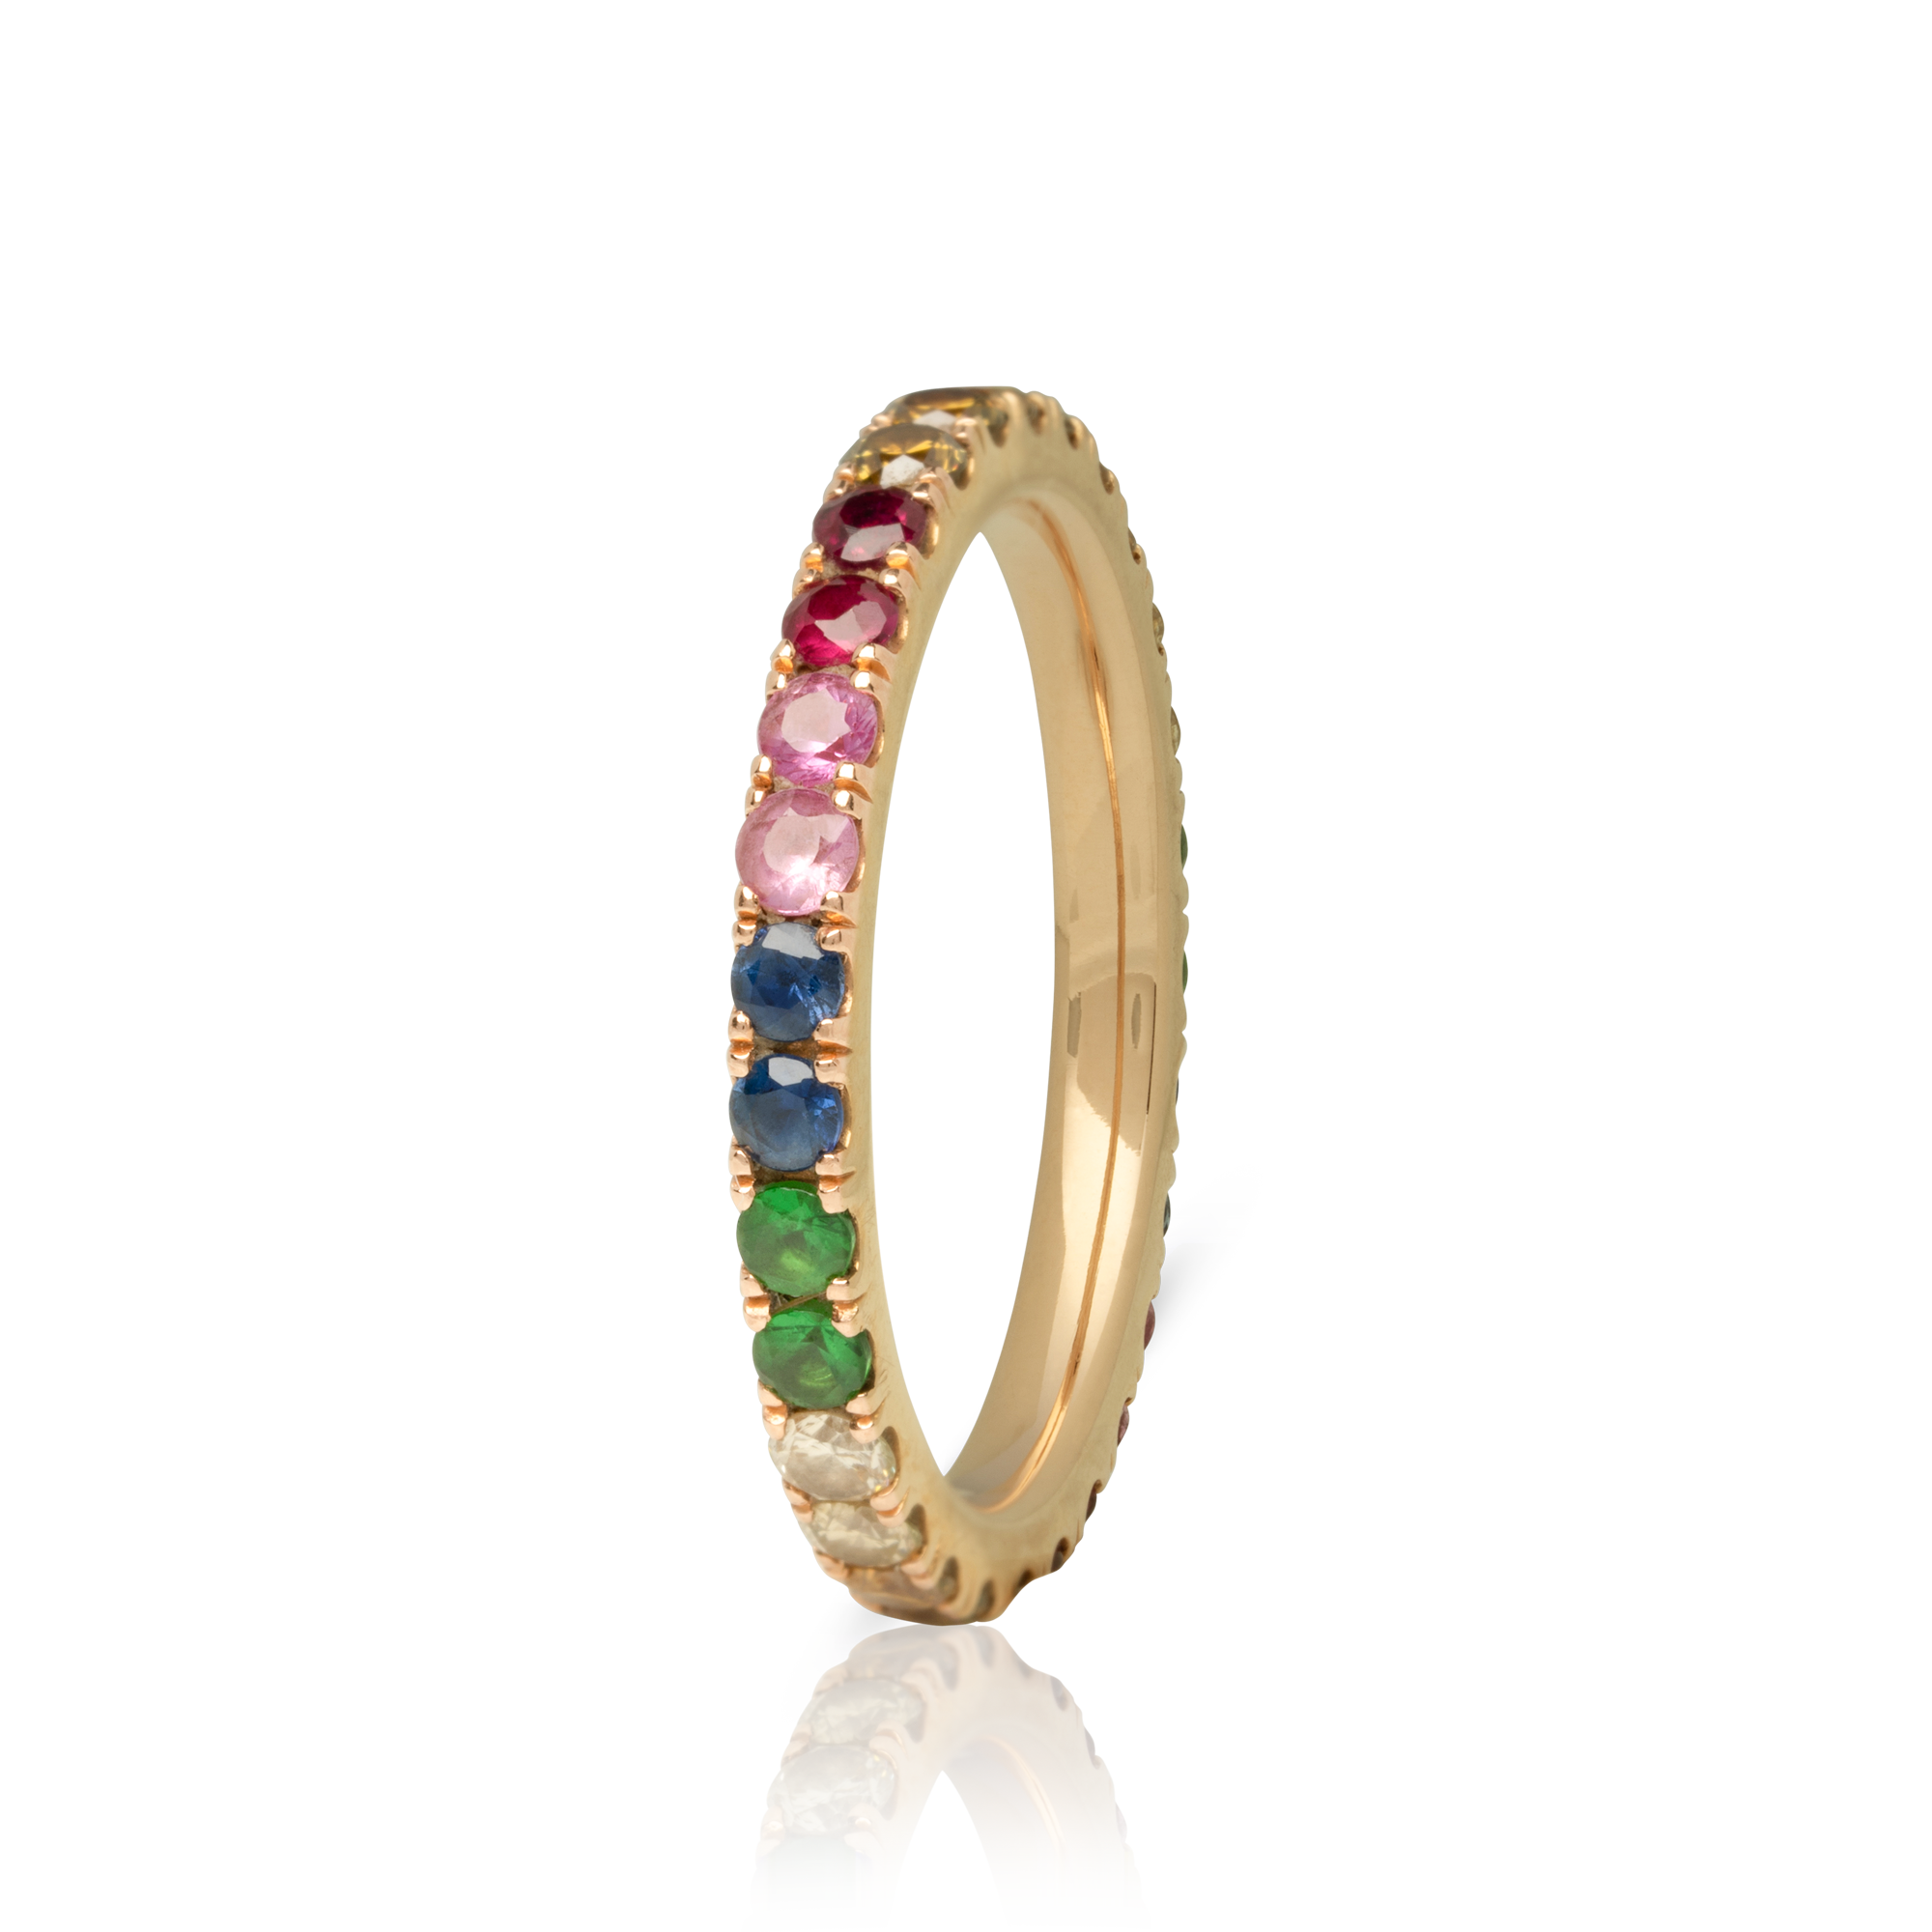 Christine Hvelplund - Flower ring-exchage-image